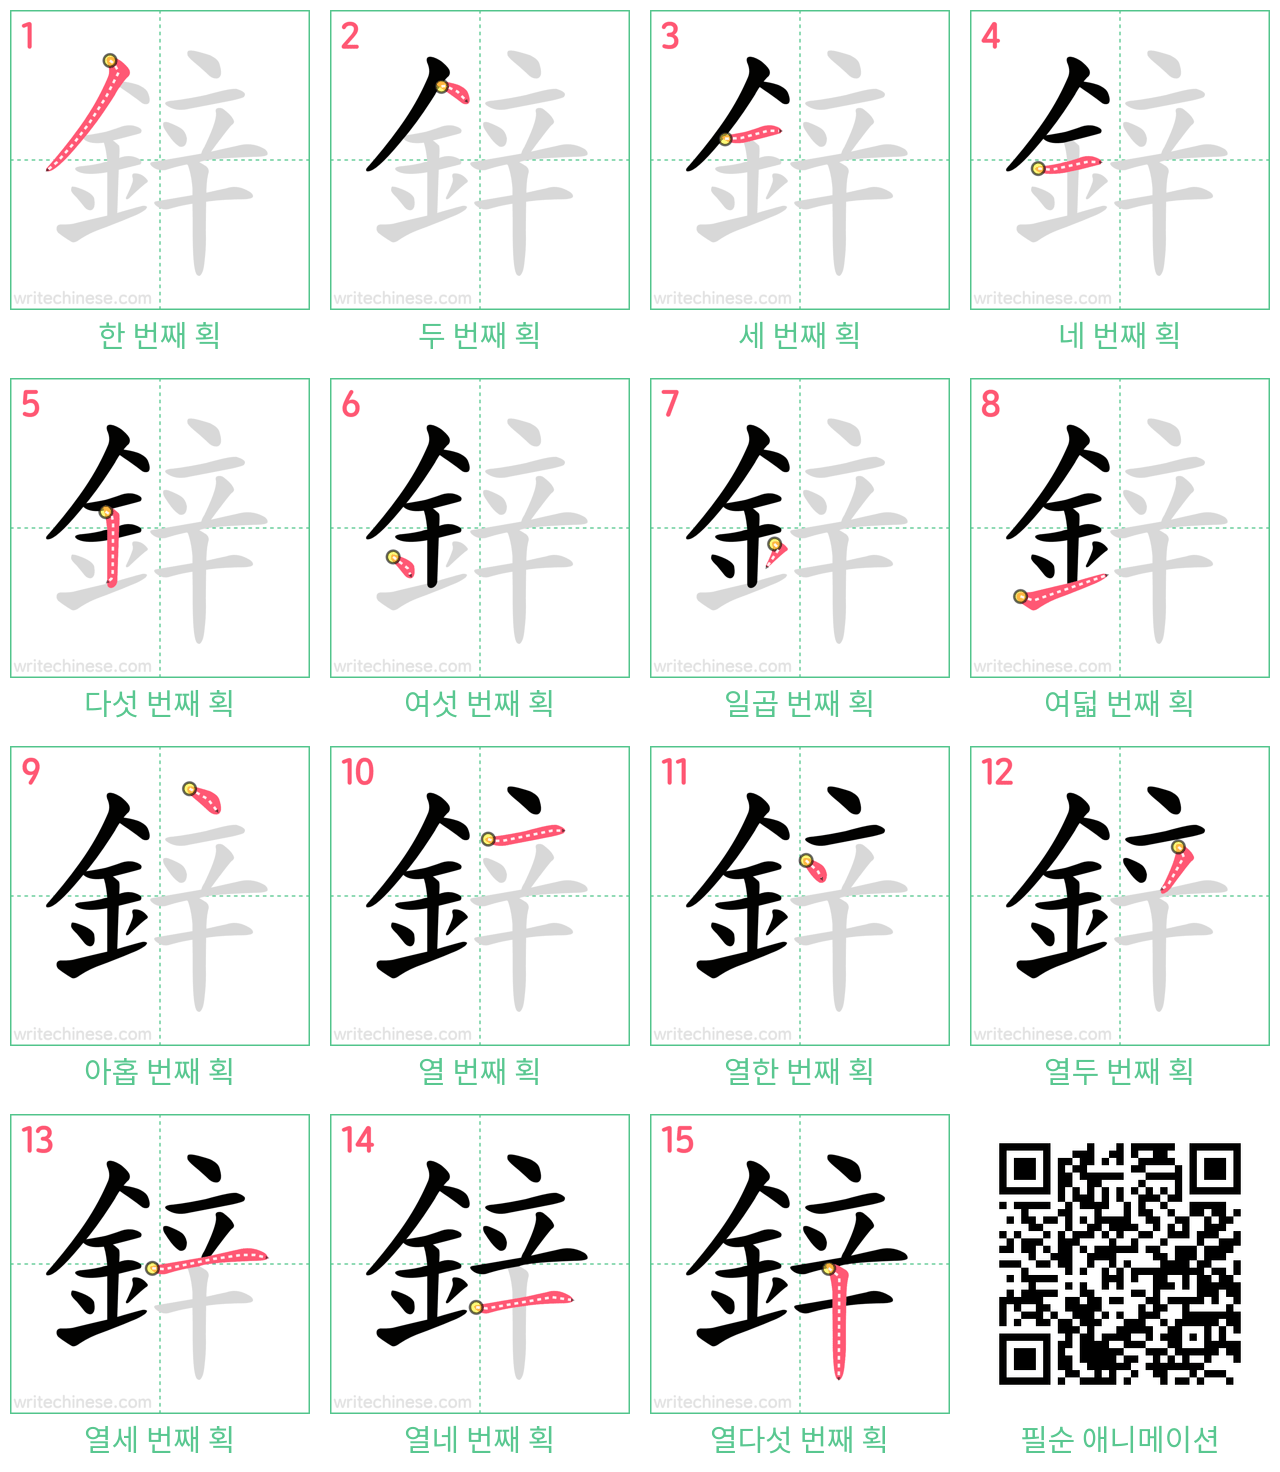 鋅 step-by-step stroke order diagrams